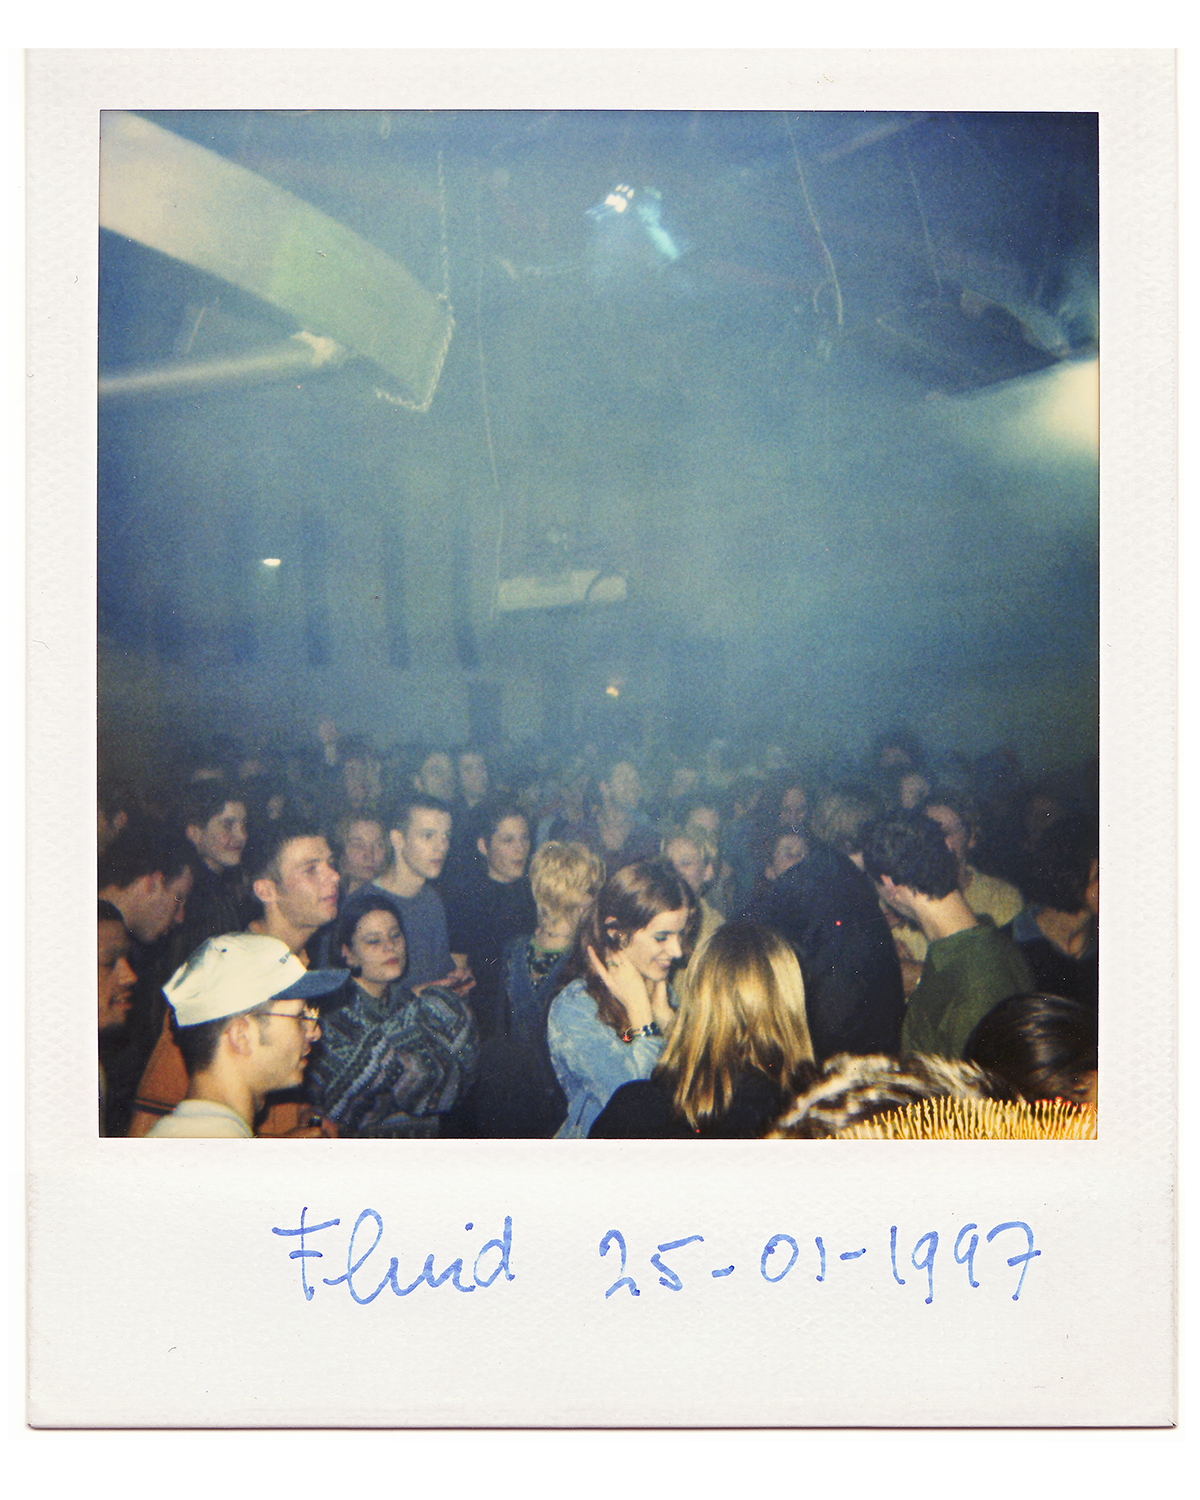 fluid1997